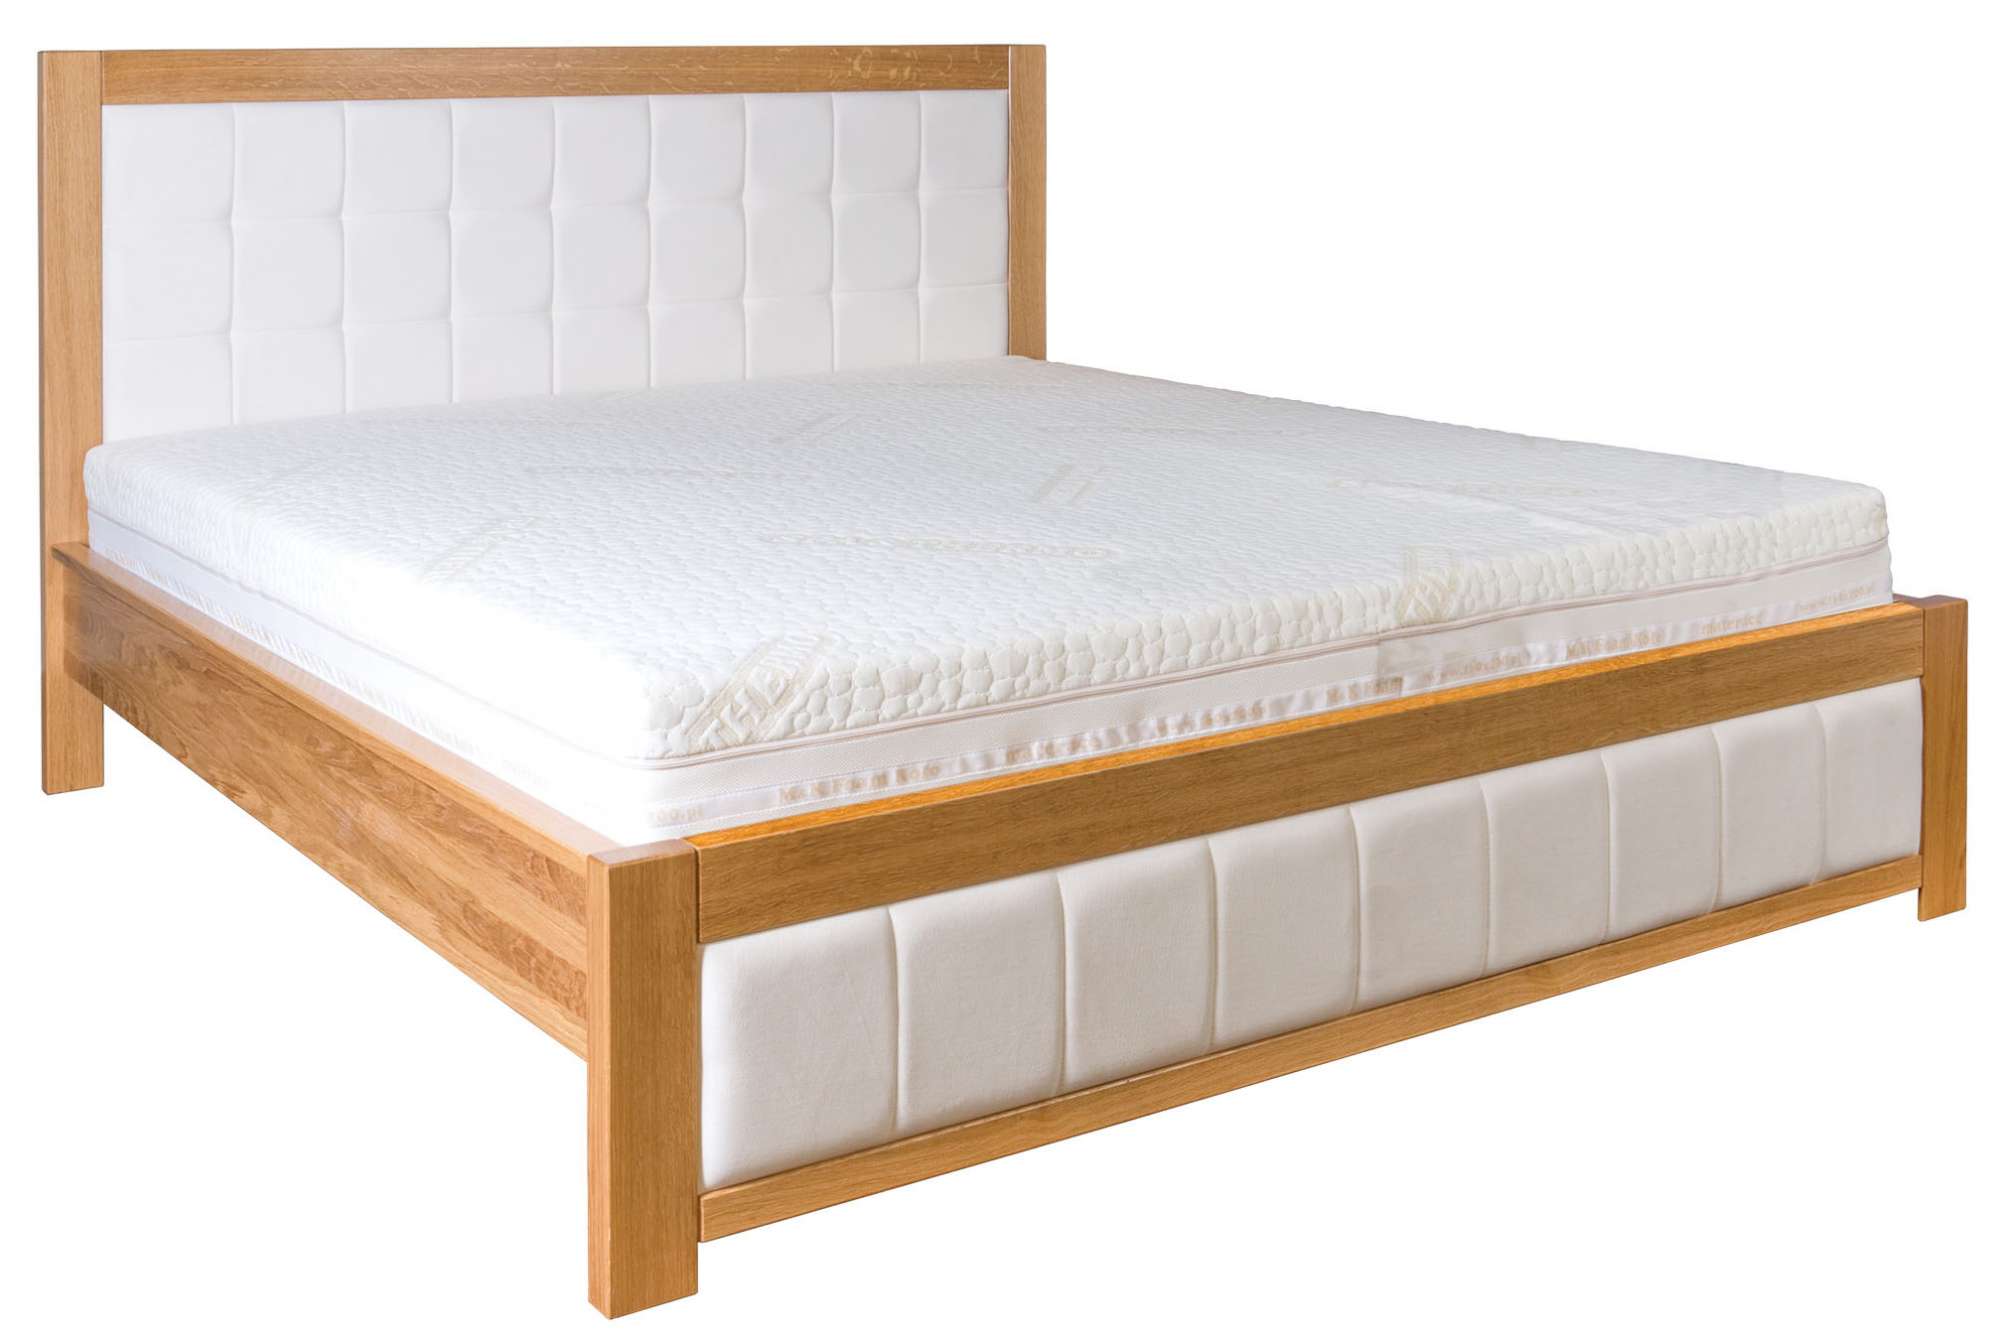 Manželská postel VIP Buk 114 s kvalitním čalouněním